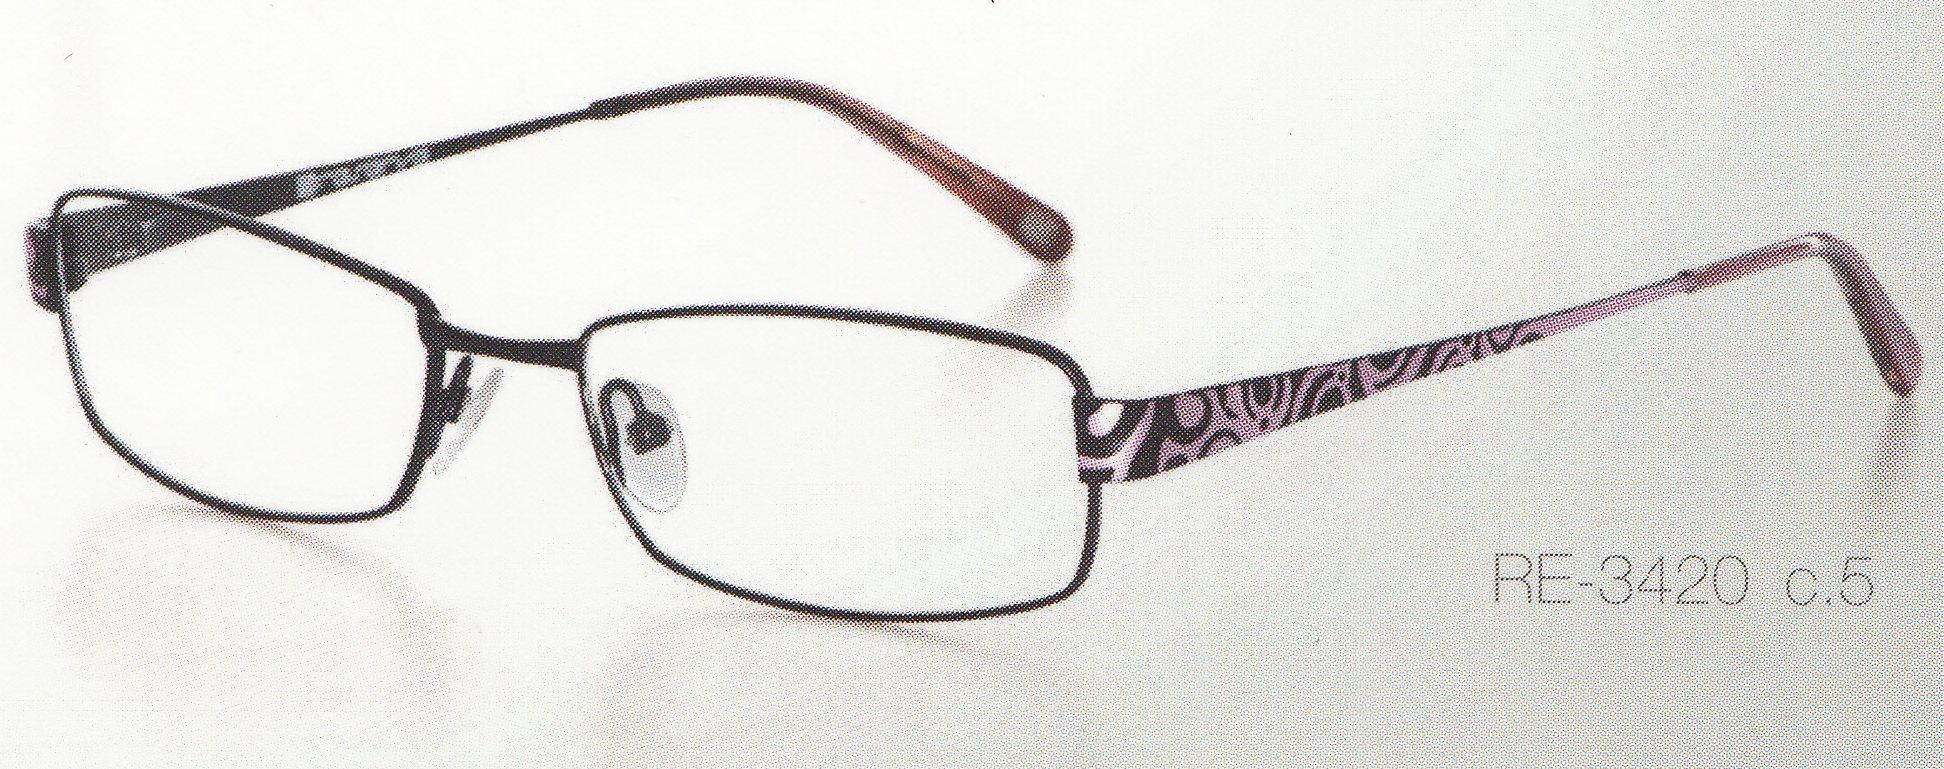 Dioptrické okuliare Reserve 3420 c.5